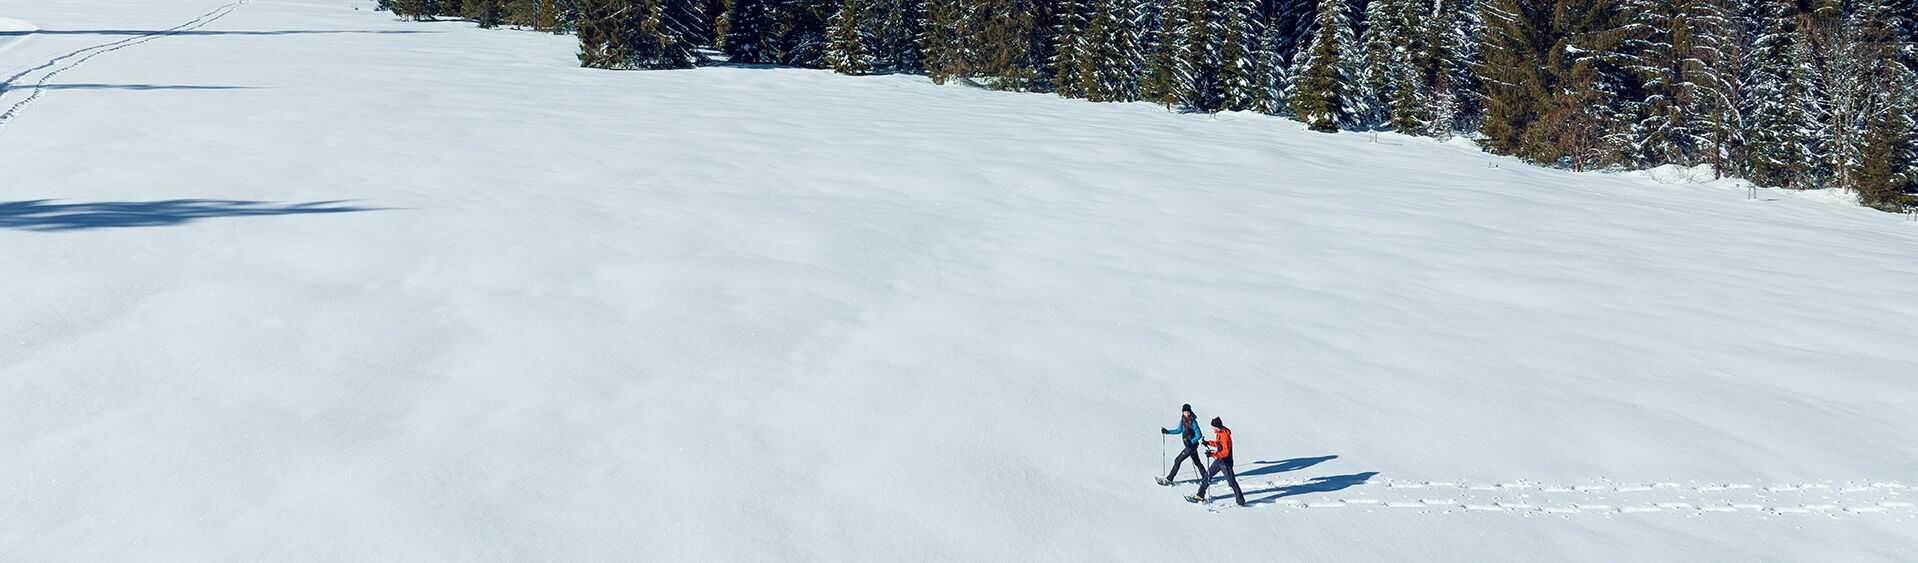 Mit den Schneeschuhen an den Füßen geht’s problemlos durch die Winterlandschaft des Naturparks Karwendel.